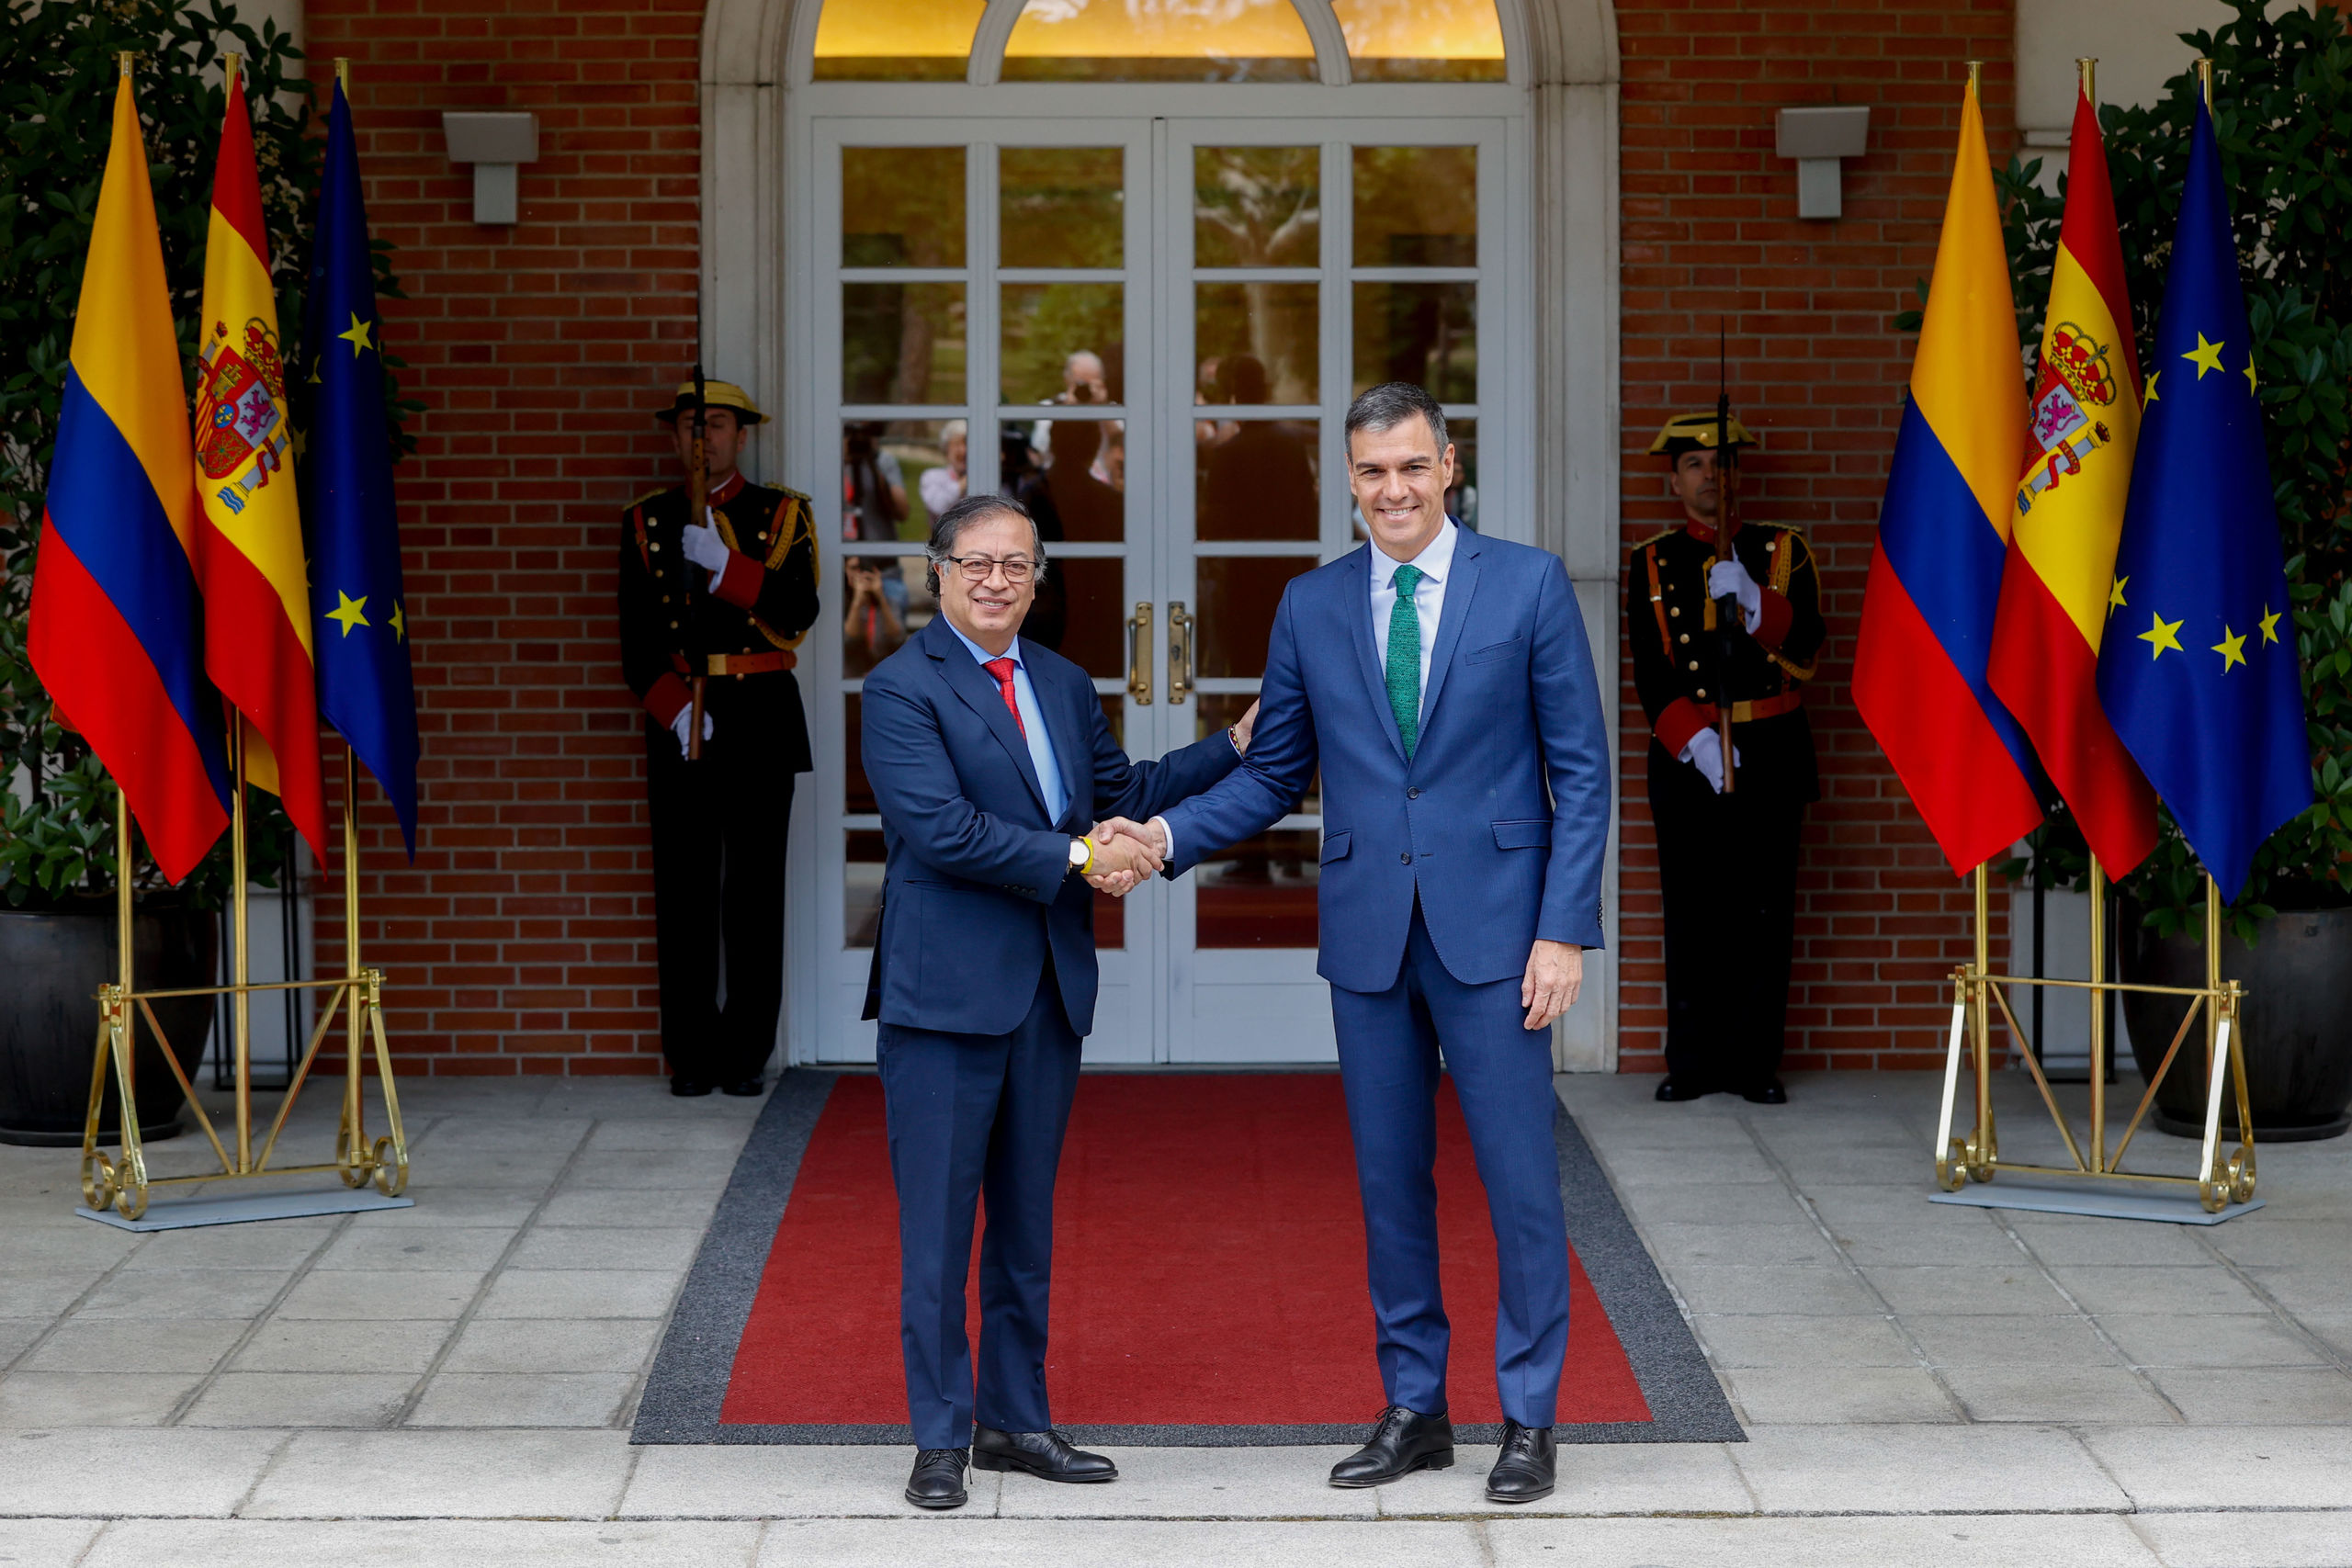 Así es Gustavo Petro, presidente de Colombia: terrorista con el alias 'comandante Aureliano' y alarmista climático